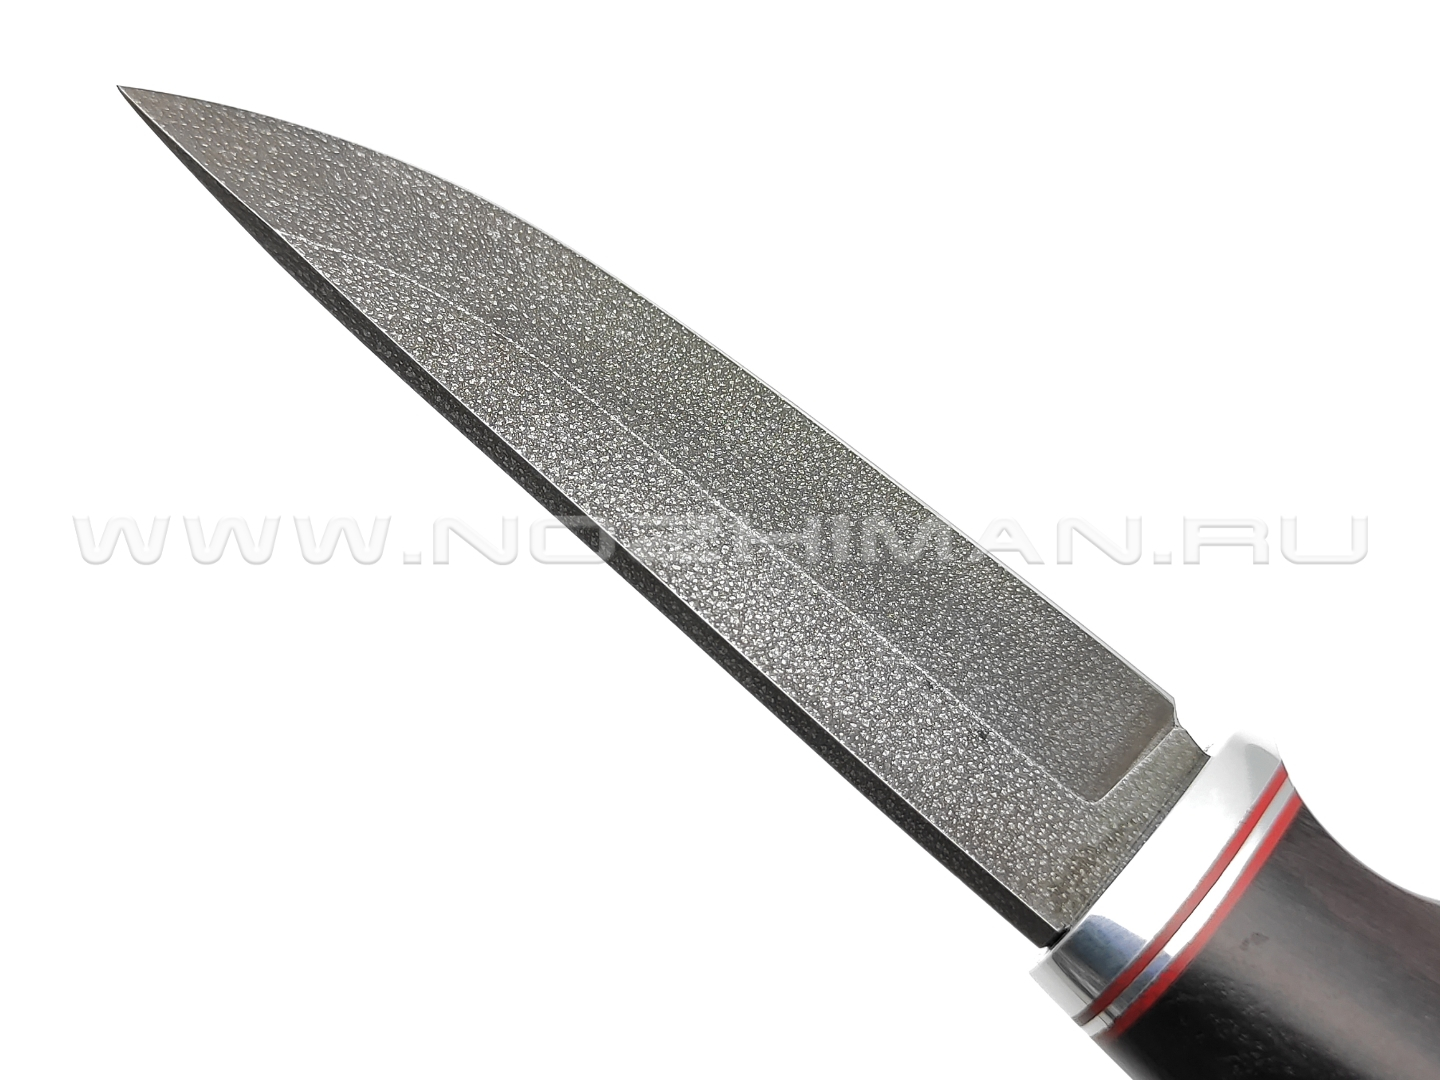 Нож "Олень" сталь Алмазка ХВ5, рукоять дерево граб (Тов. Завьялова)